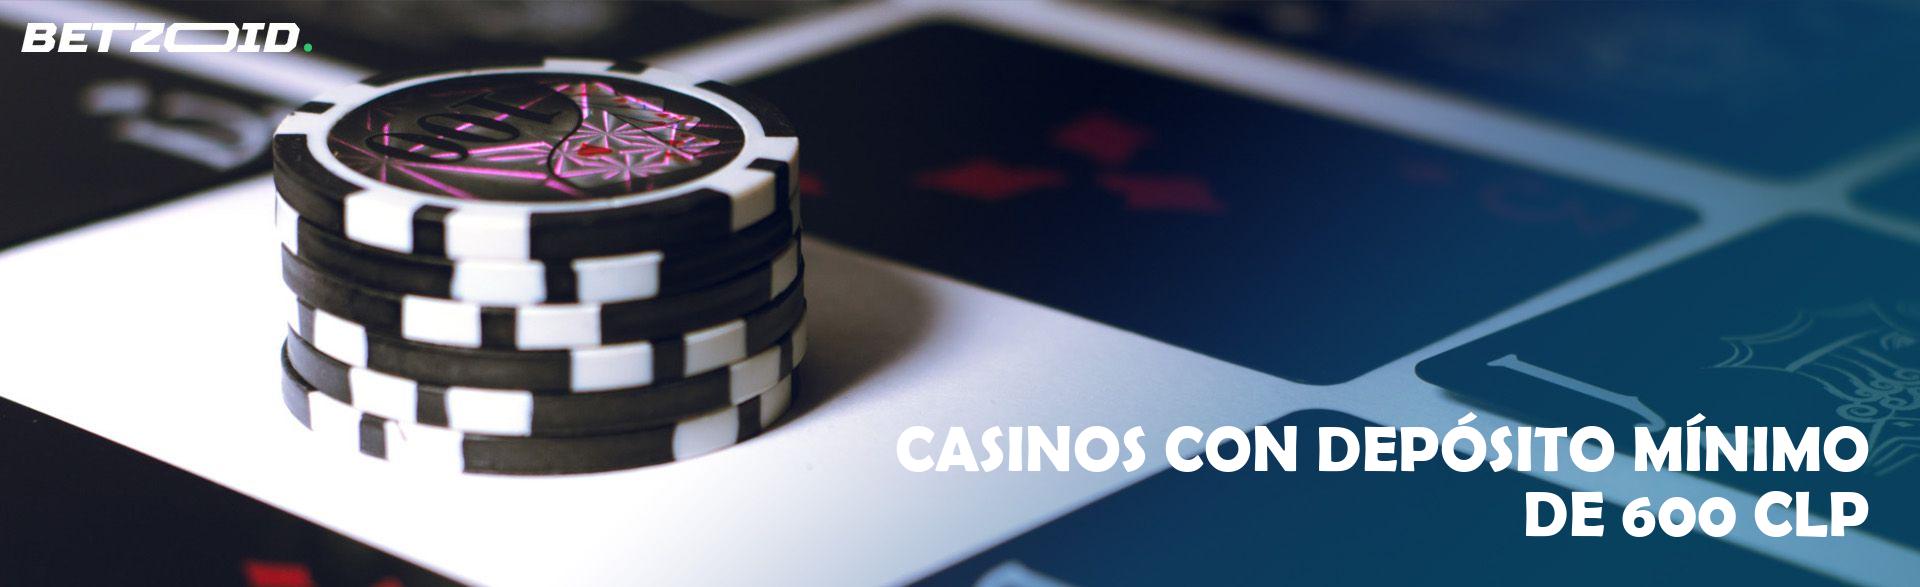 Casinos con Depósito Mínimo de 600 CLP.